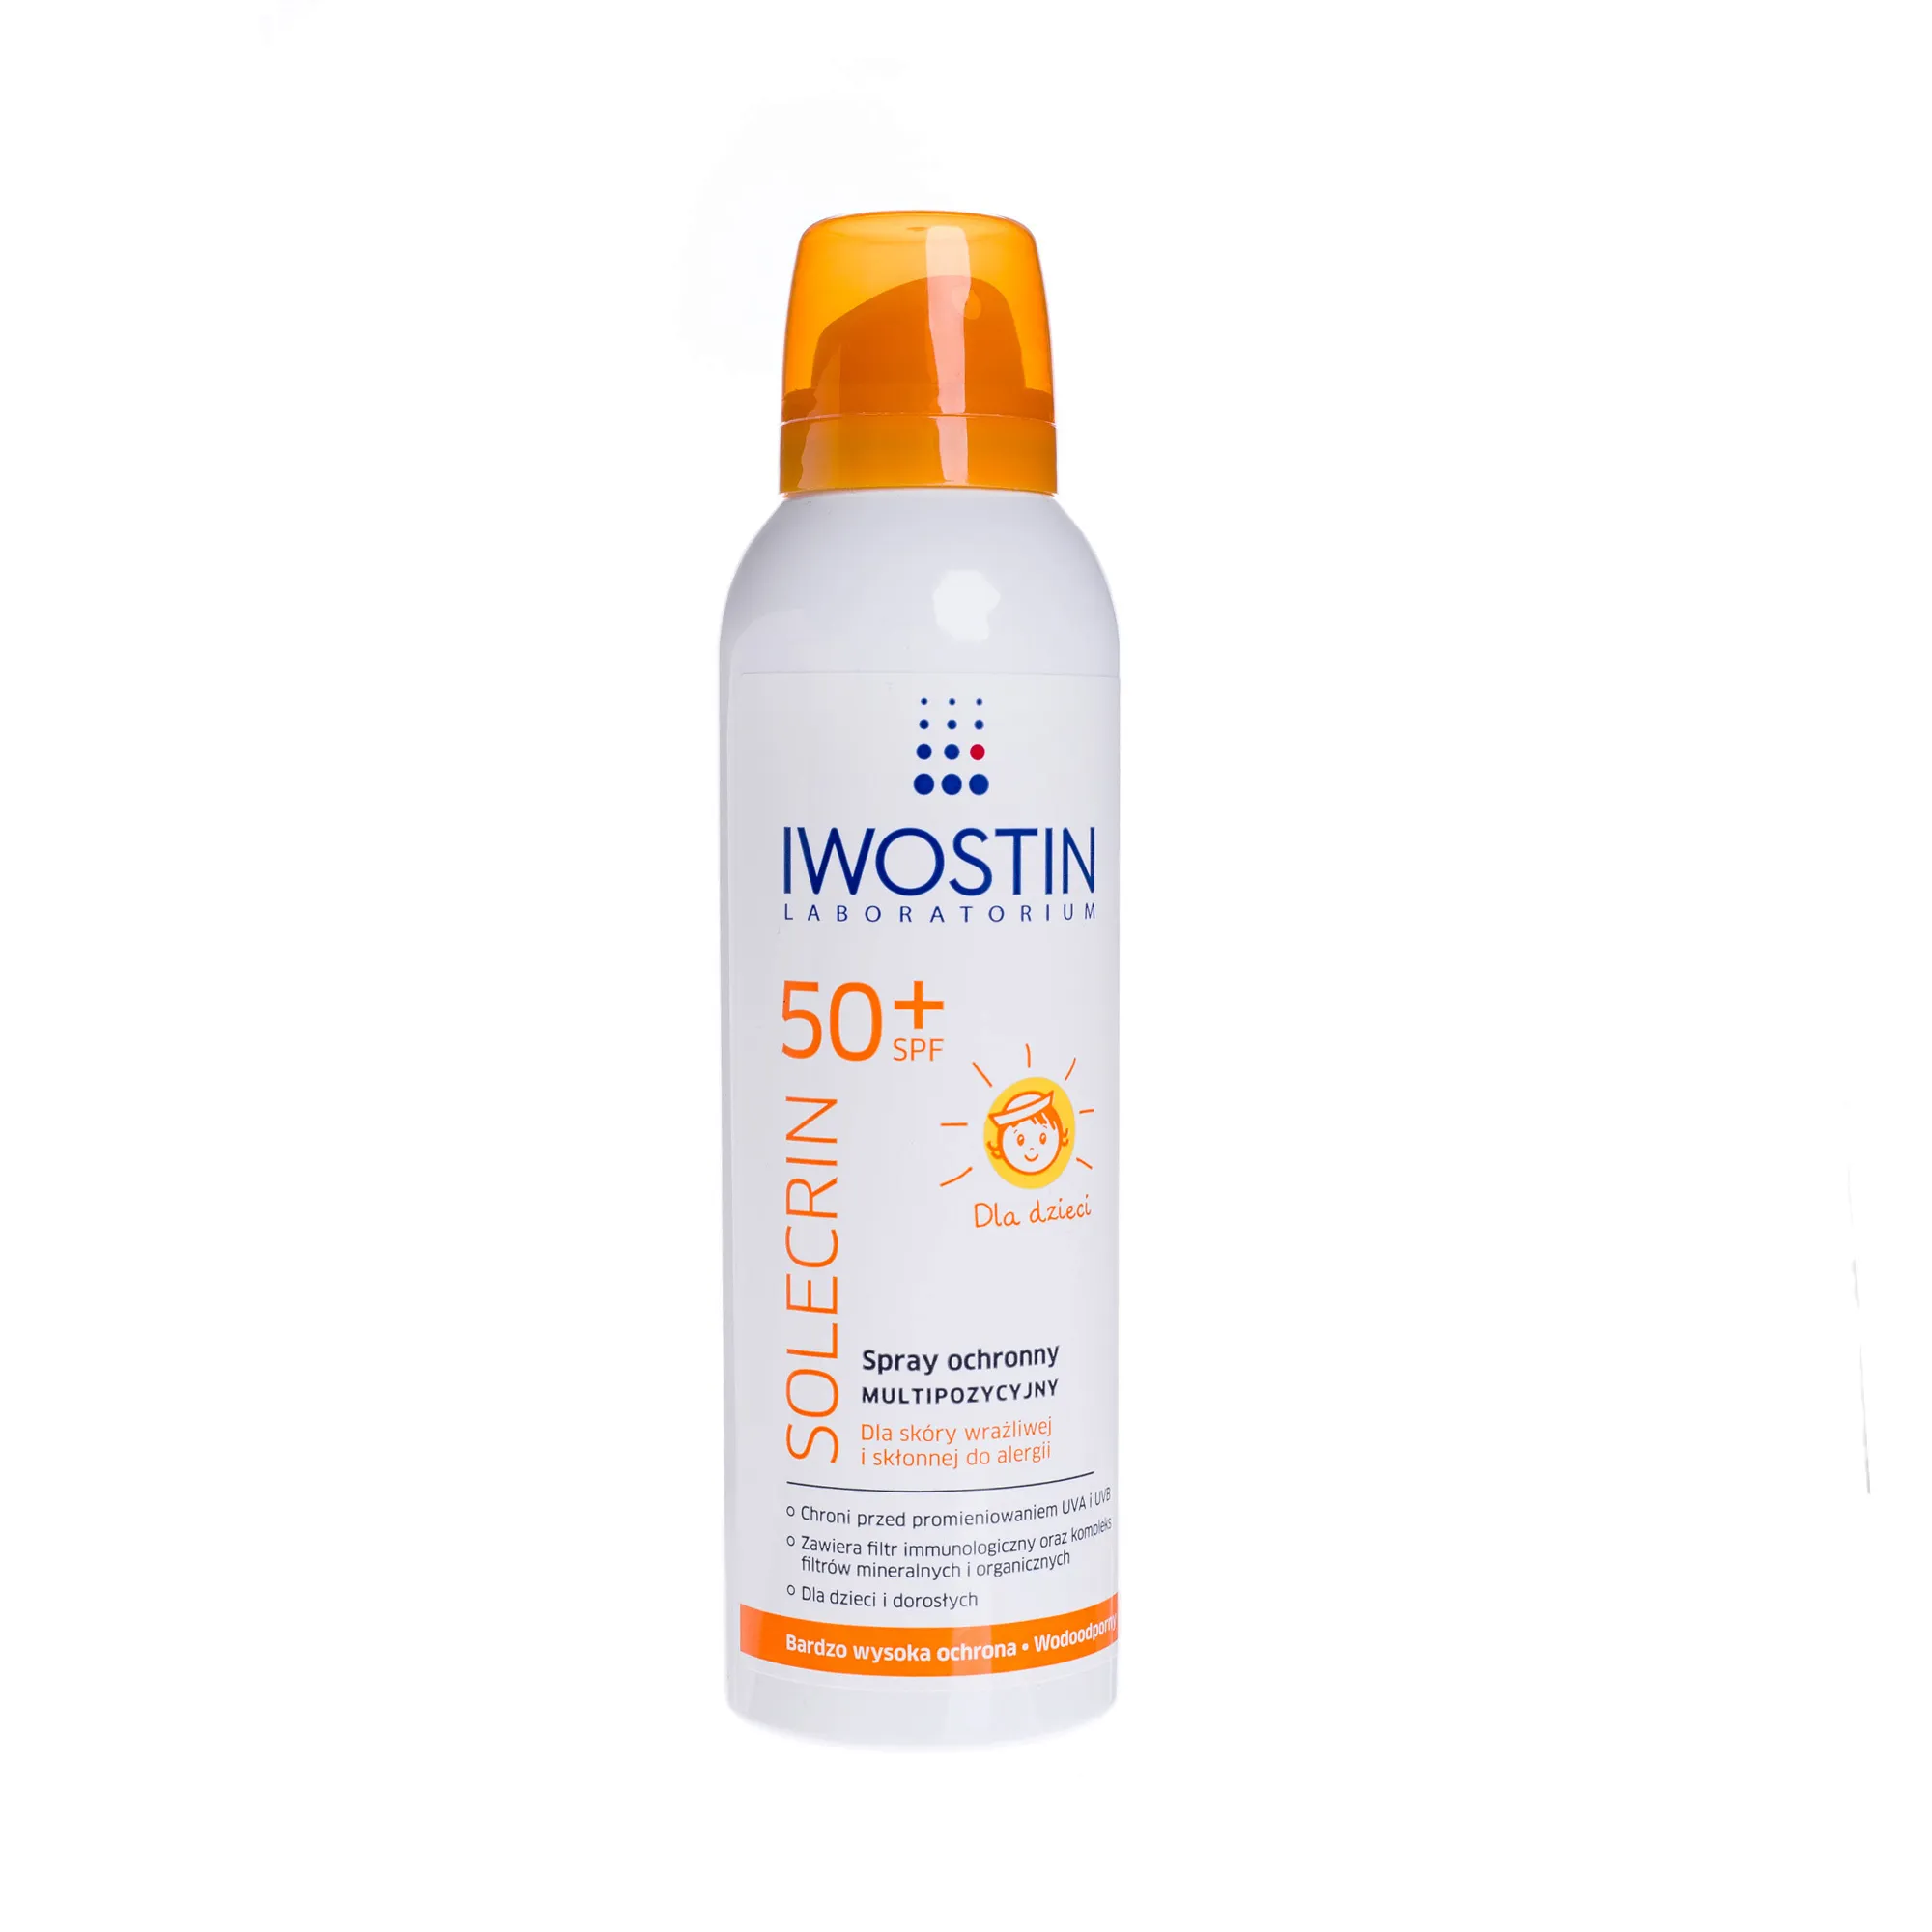 IWOSTIN, Solecrin, spray ochronny multipozycyjny, SPF 50 +, 150 ml